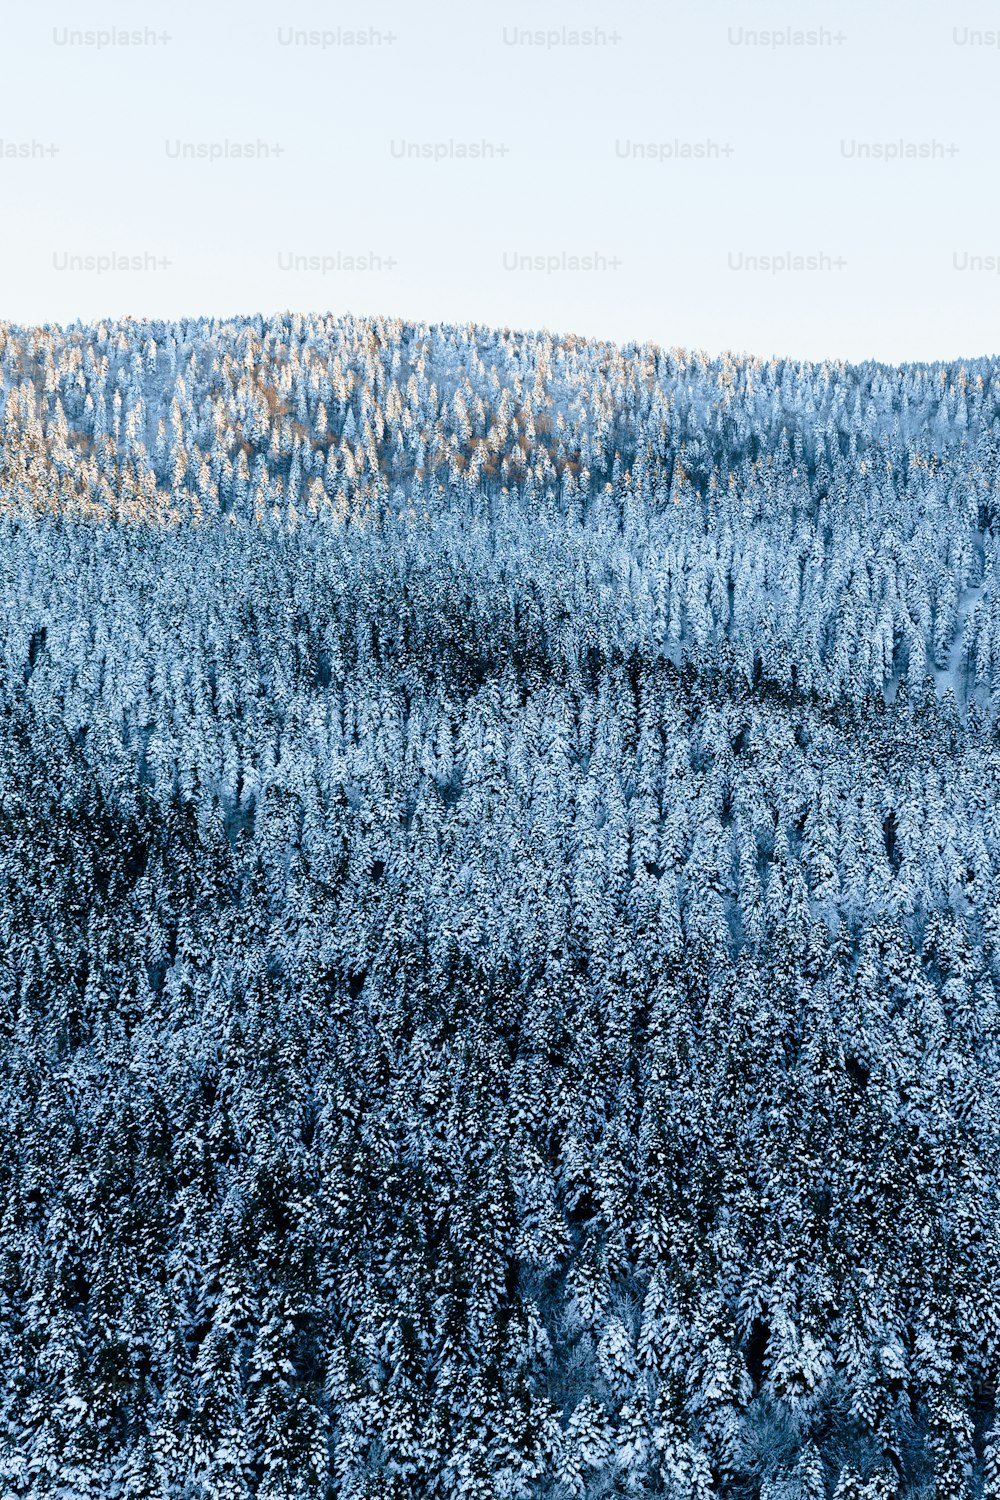 eine große Gruppe von Bäumen mit Schnee bedeckt